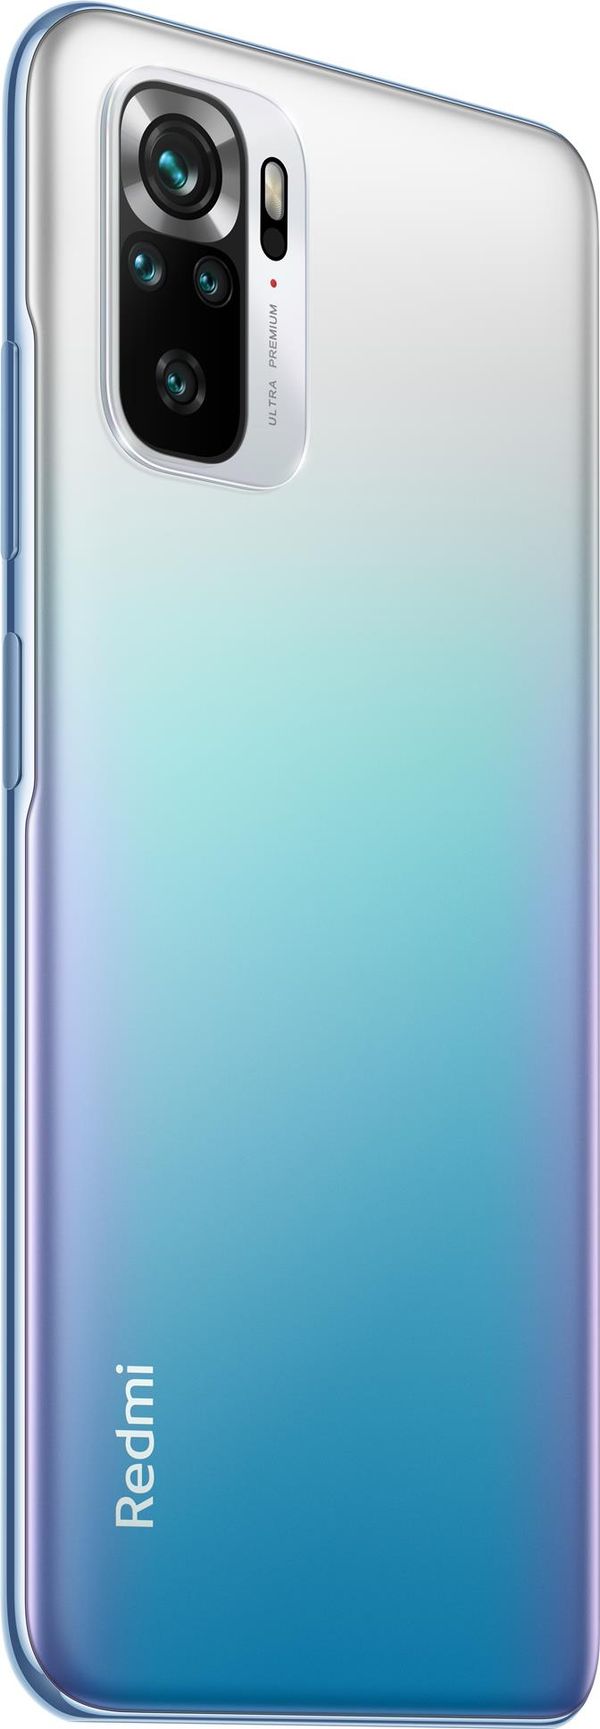 RE-951K7BN90001-PQ smartphone reacondicionado xiaomi redmi note 10s ocean blue 6g ram 64gb rom grado a